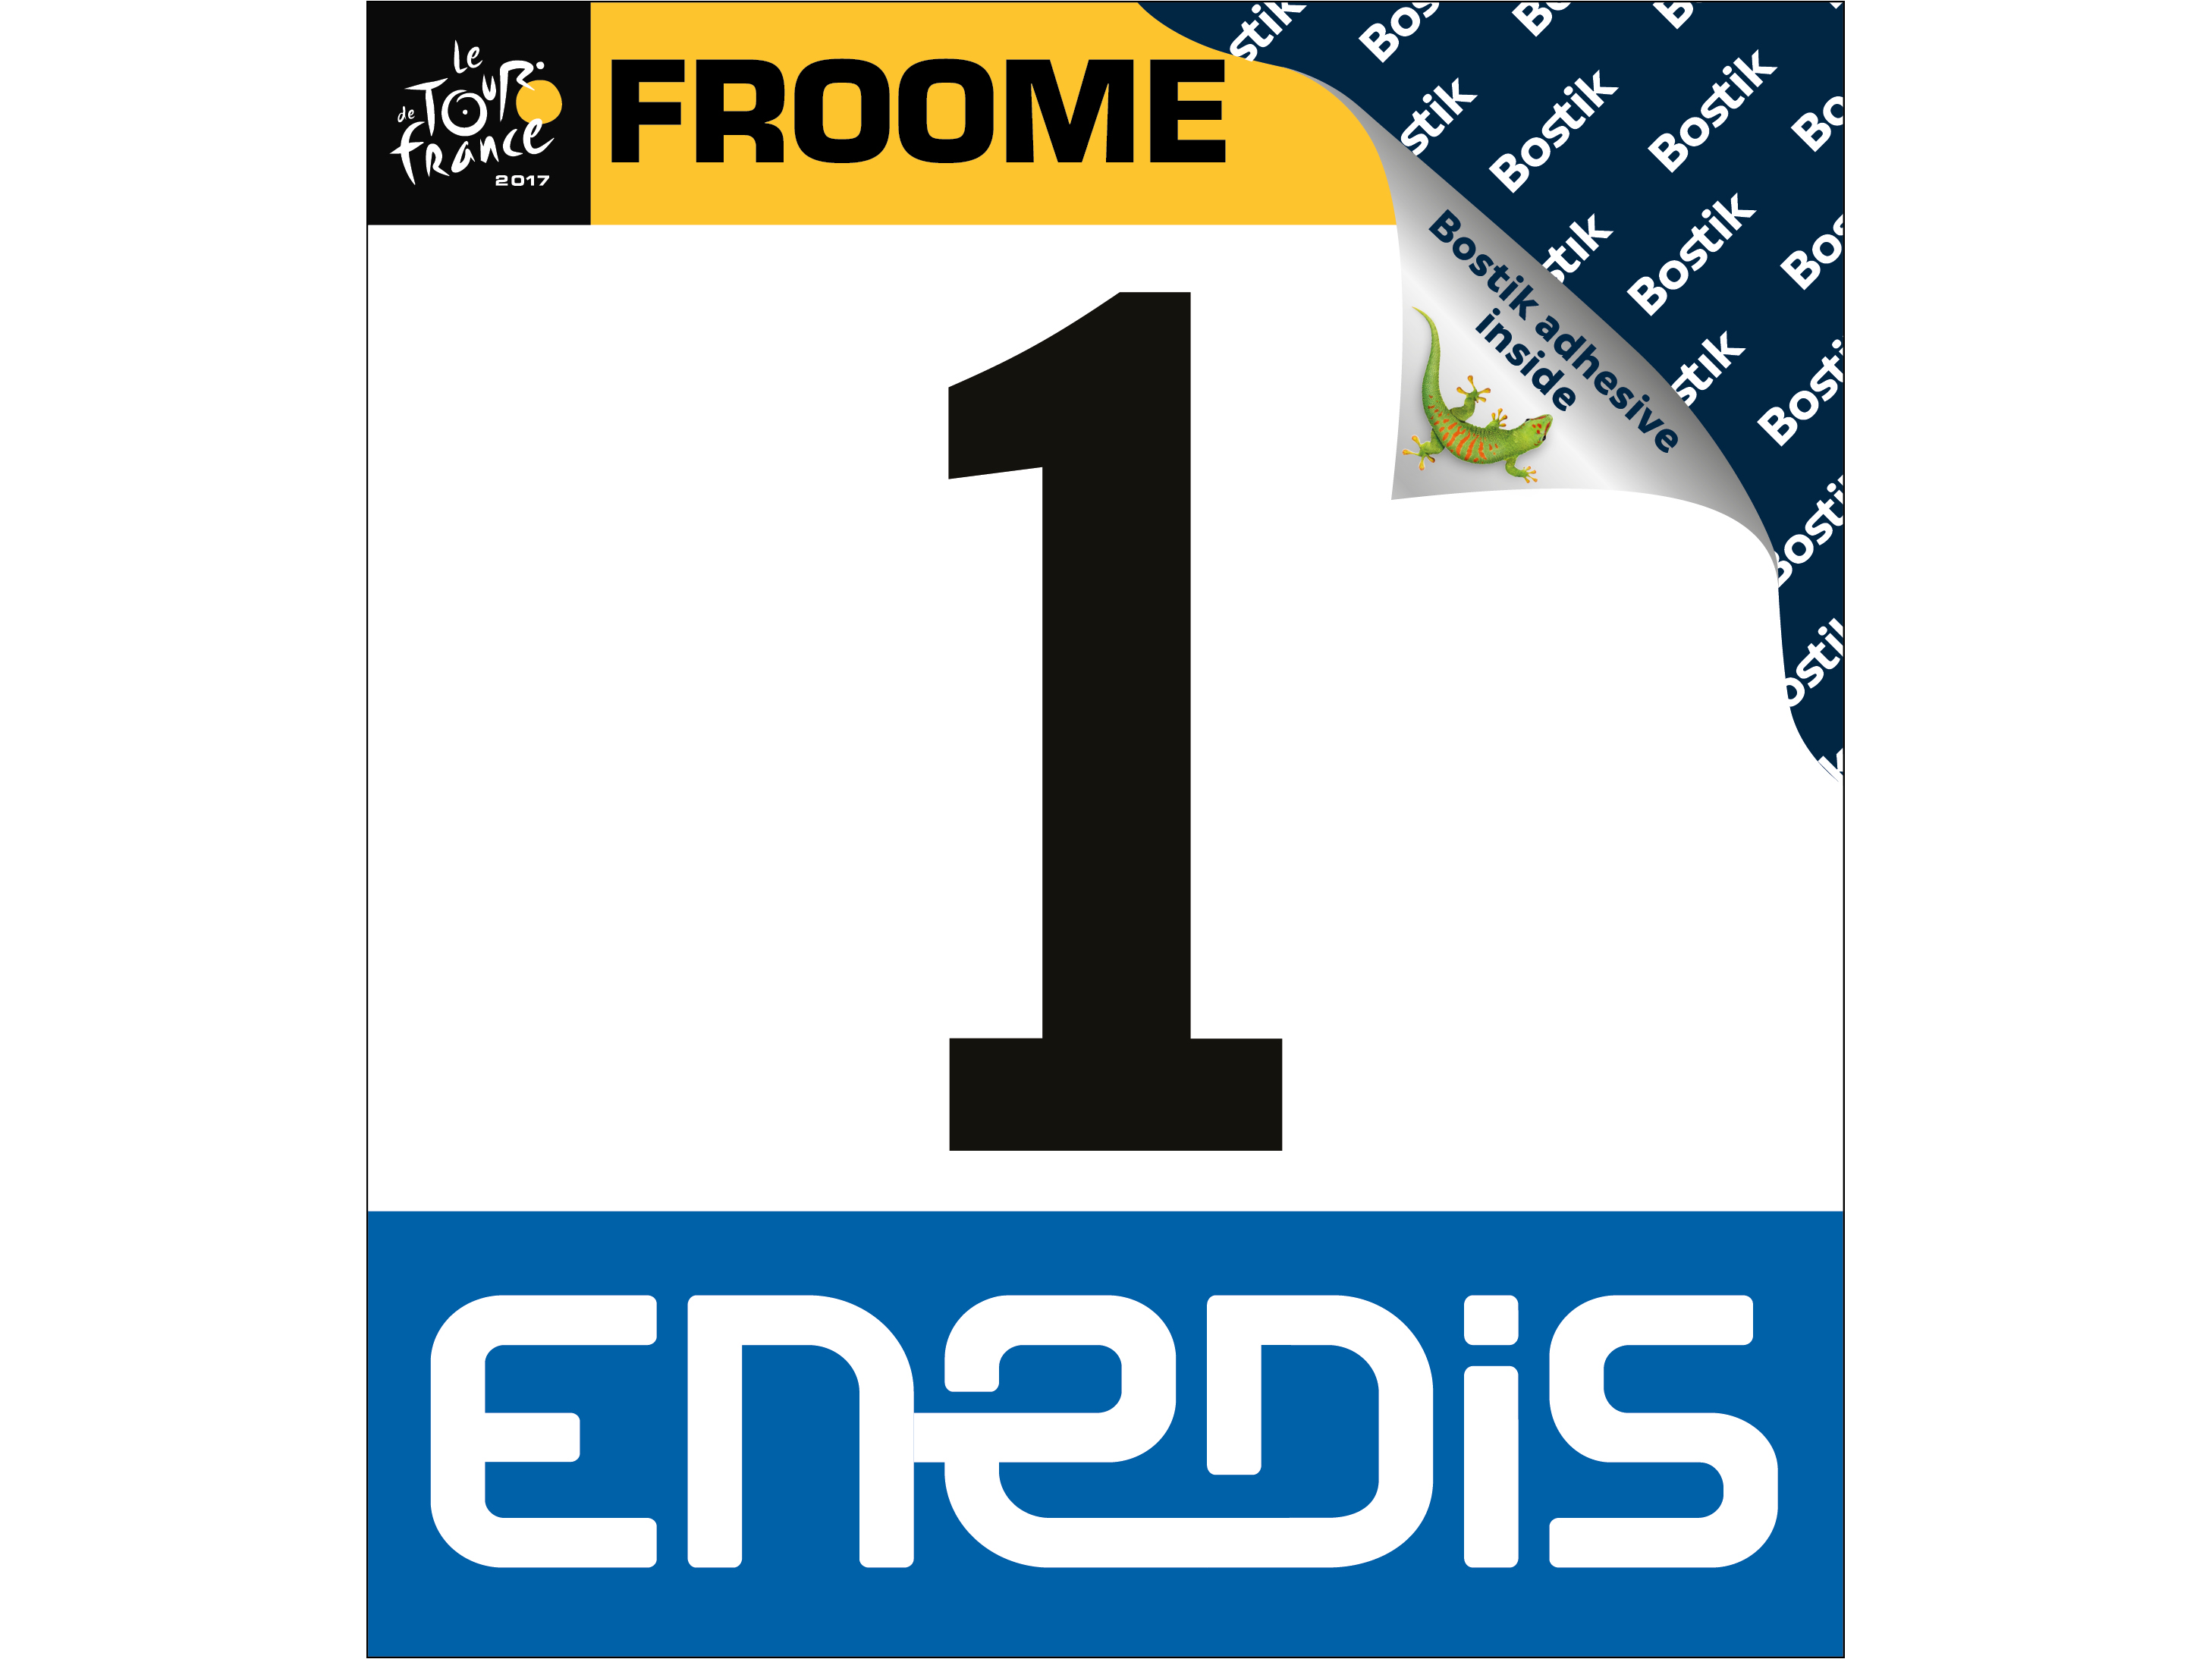 Christopher FROOME Tour de France 2017